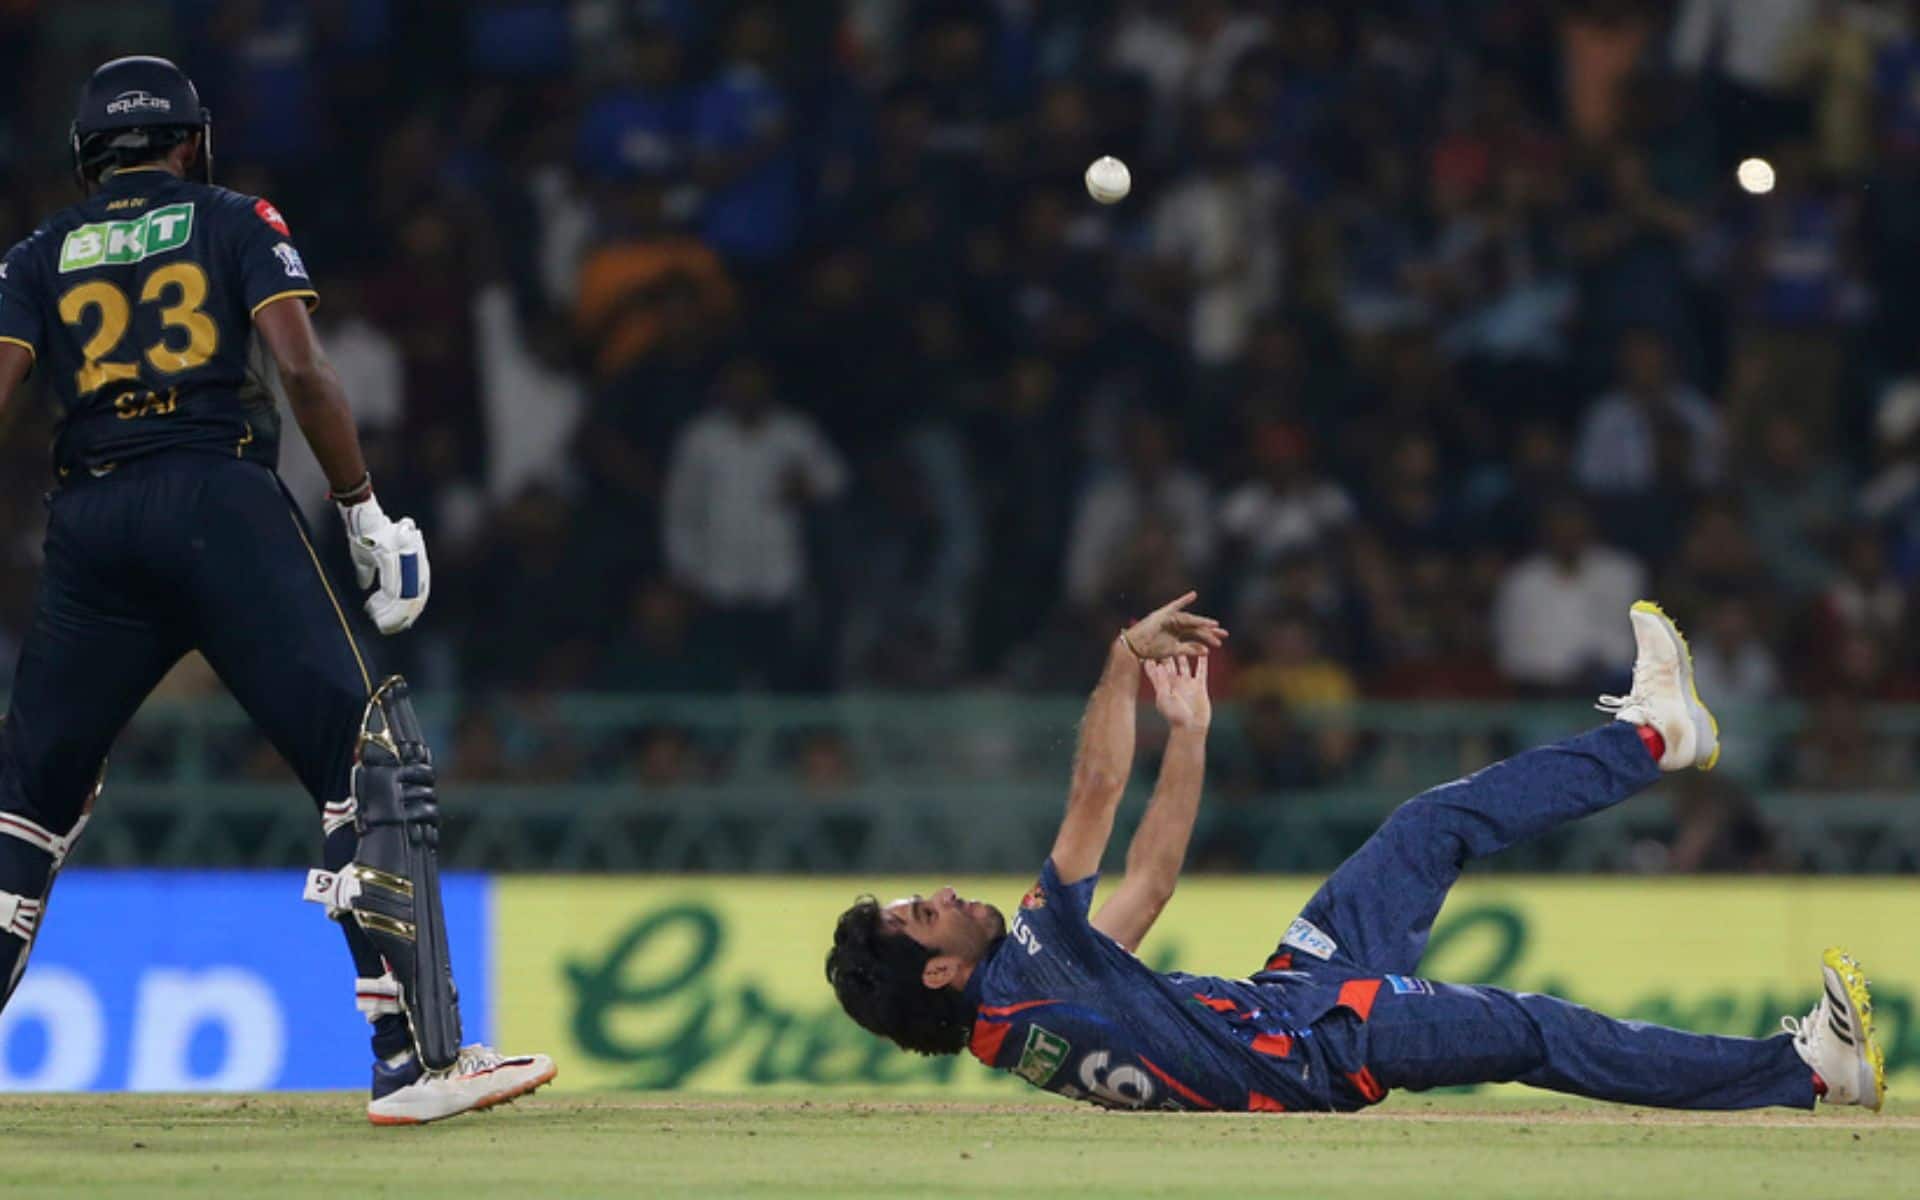 Ravi Bishnoi Takes a sensational return catch [AP]